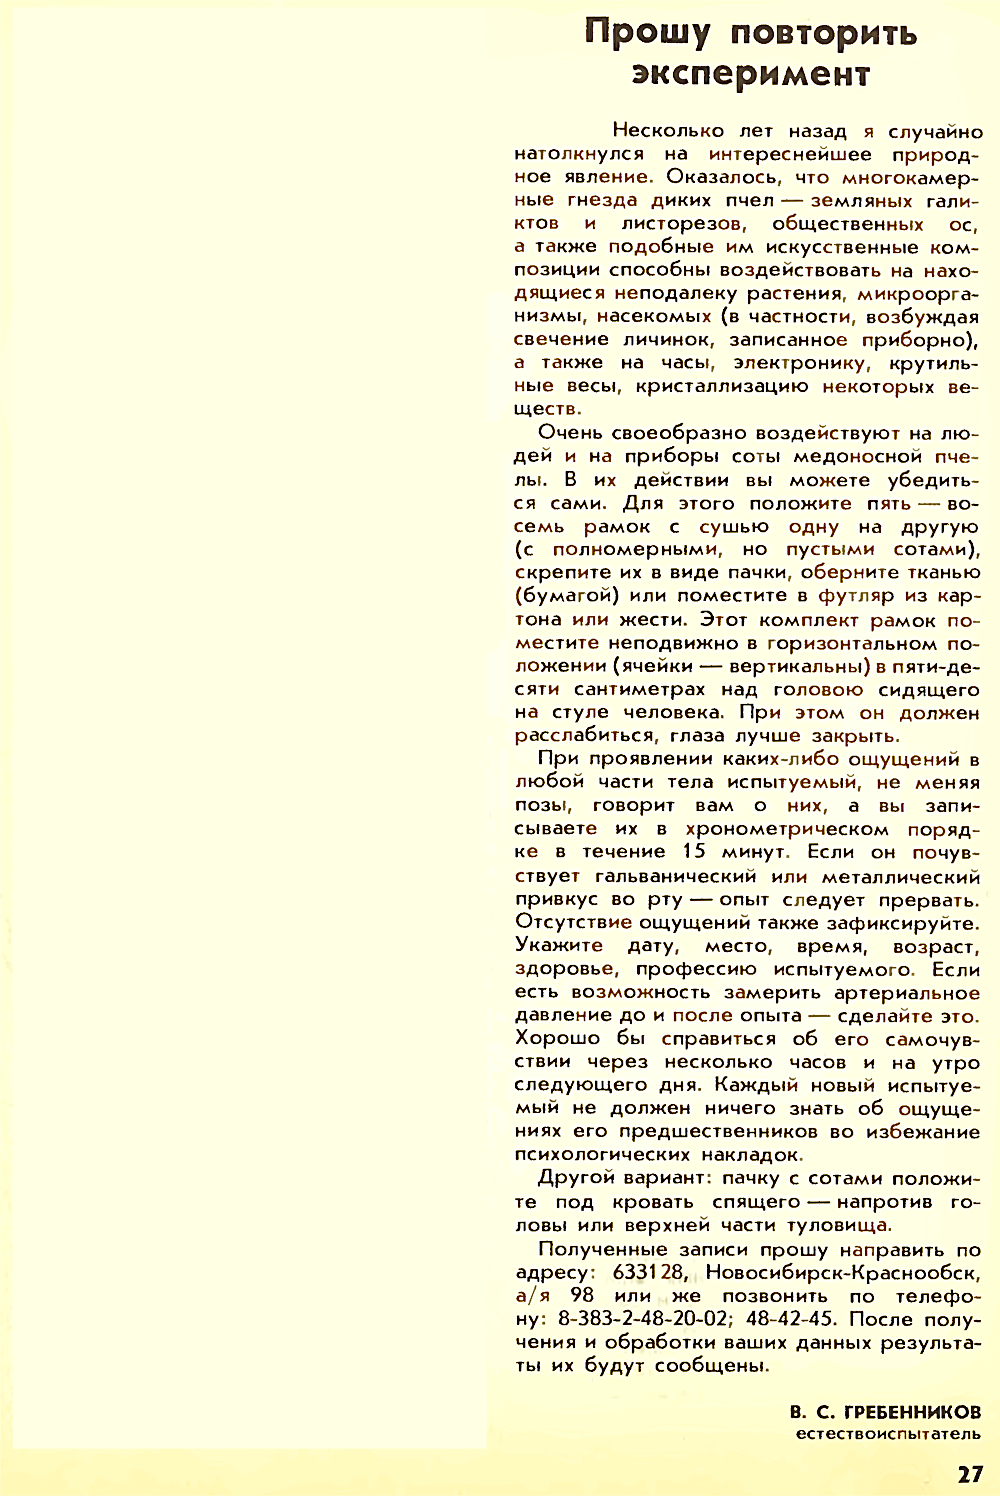 Прошу повторить эксперимент. В.С. Гребенников. Пчеловодство, 1990, №2, с.27